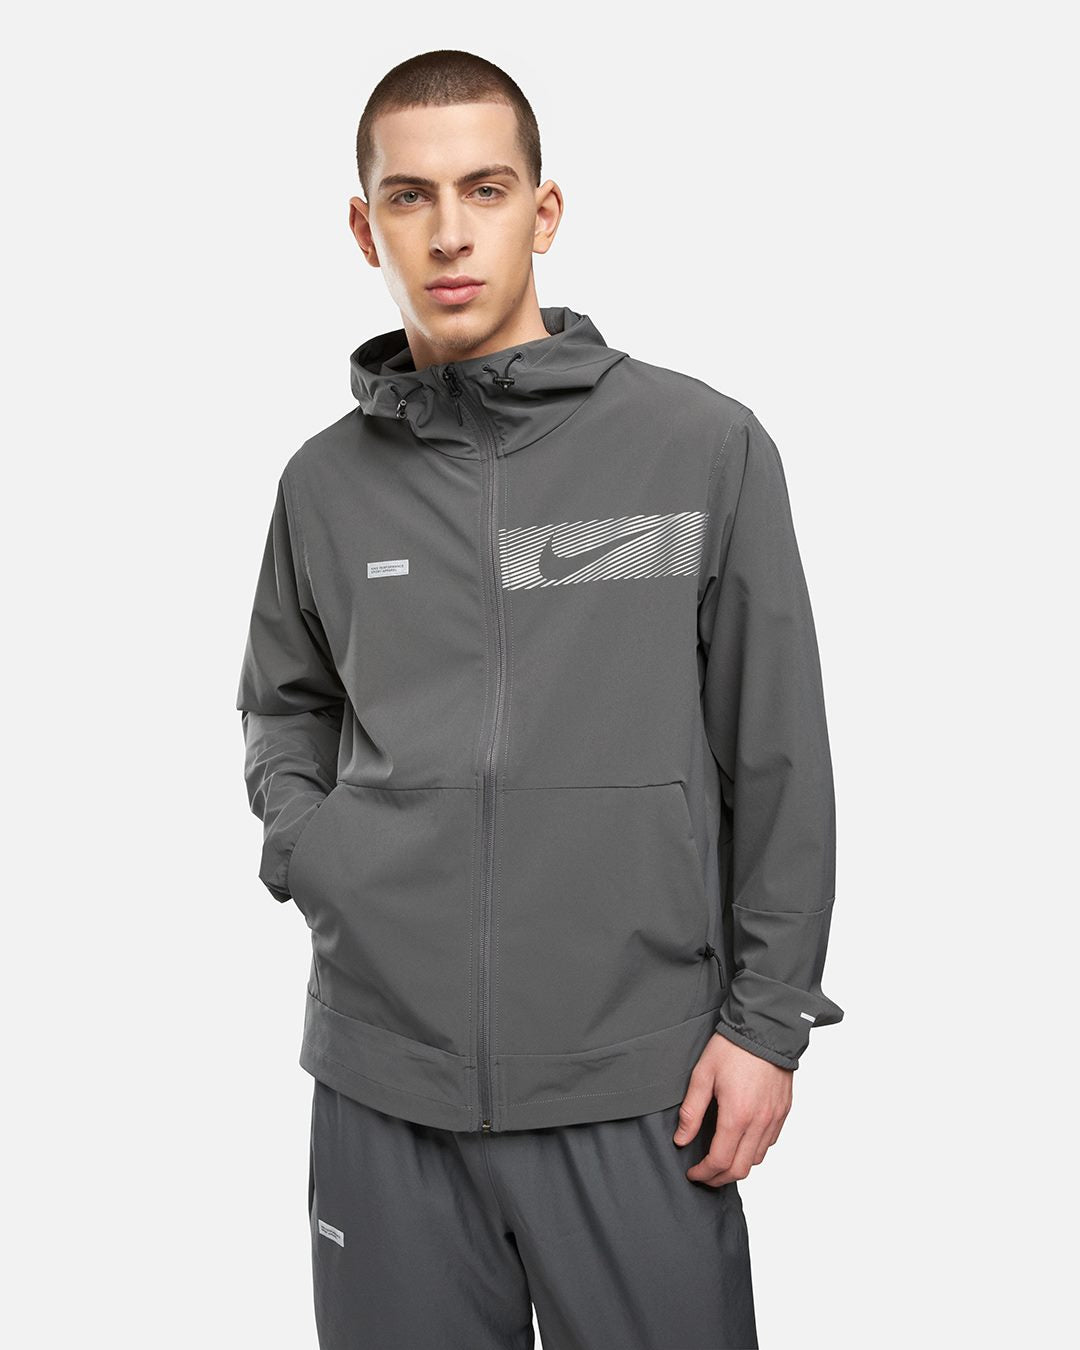 Jacke Nike Unlimited - Grau